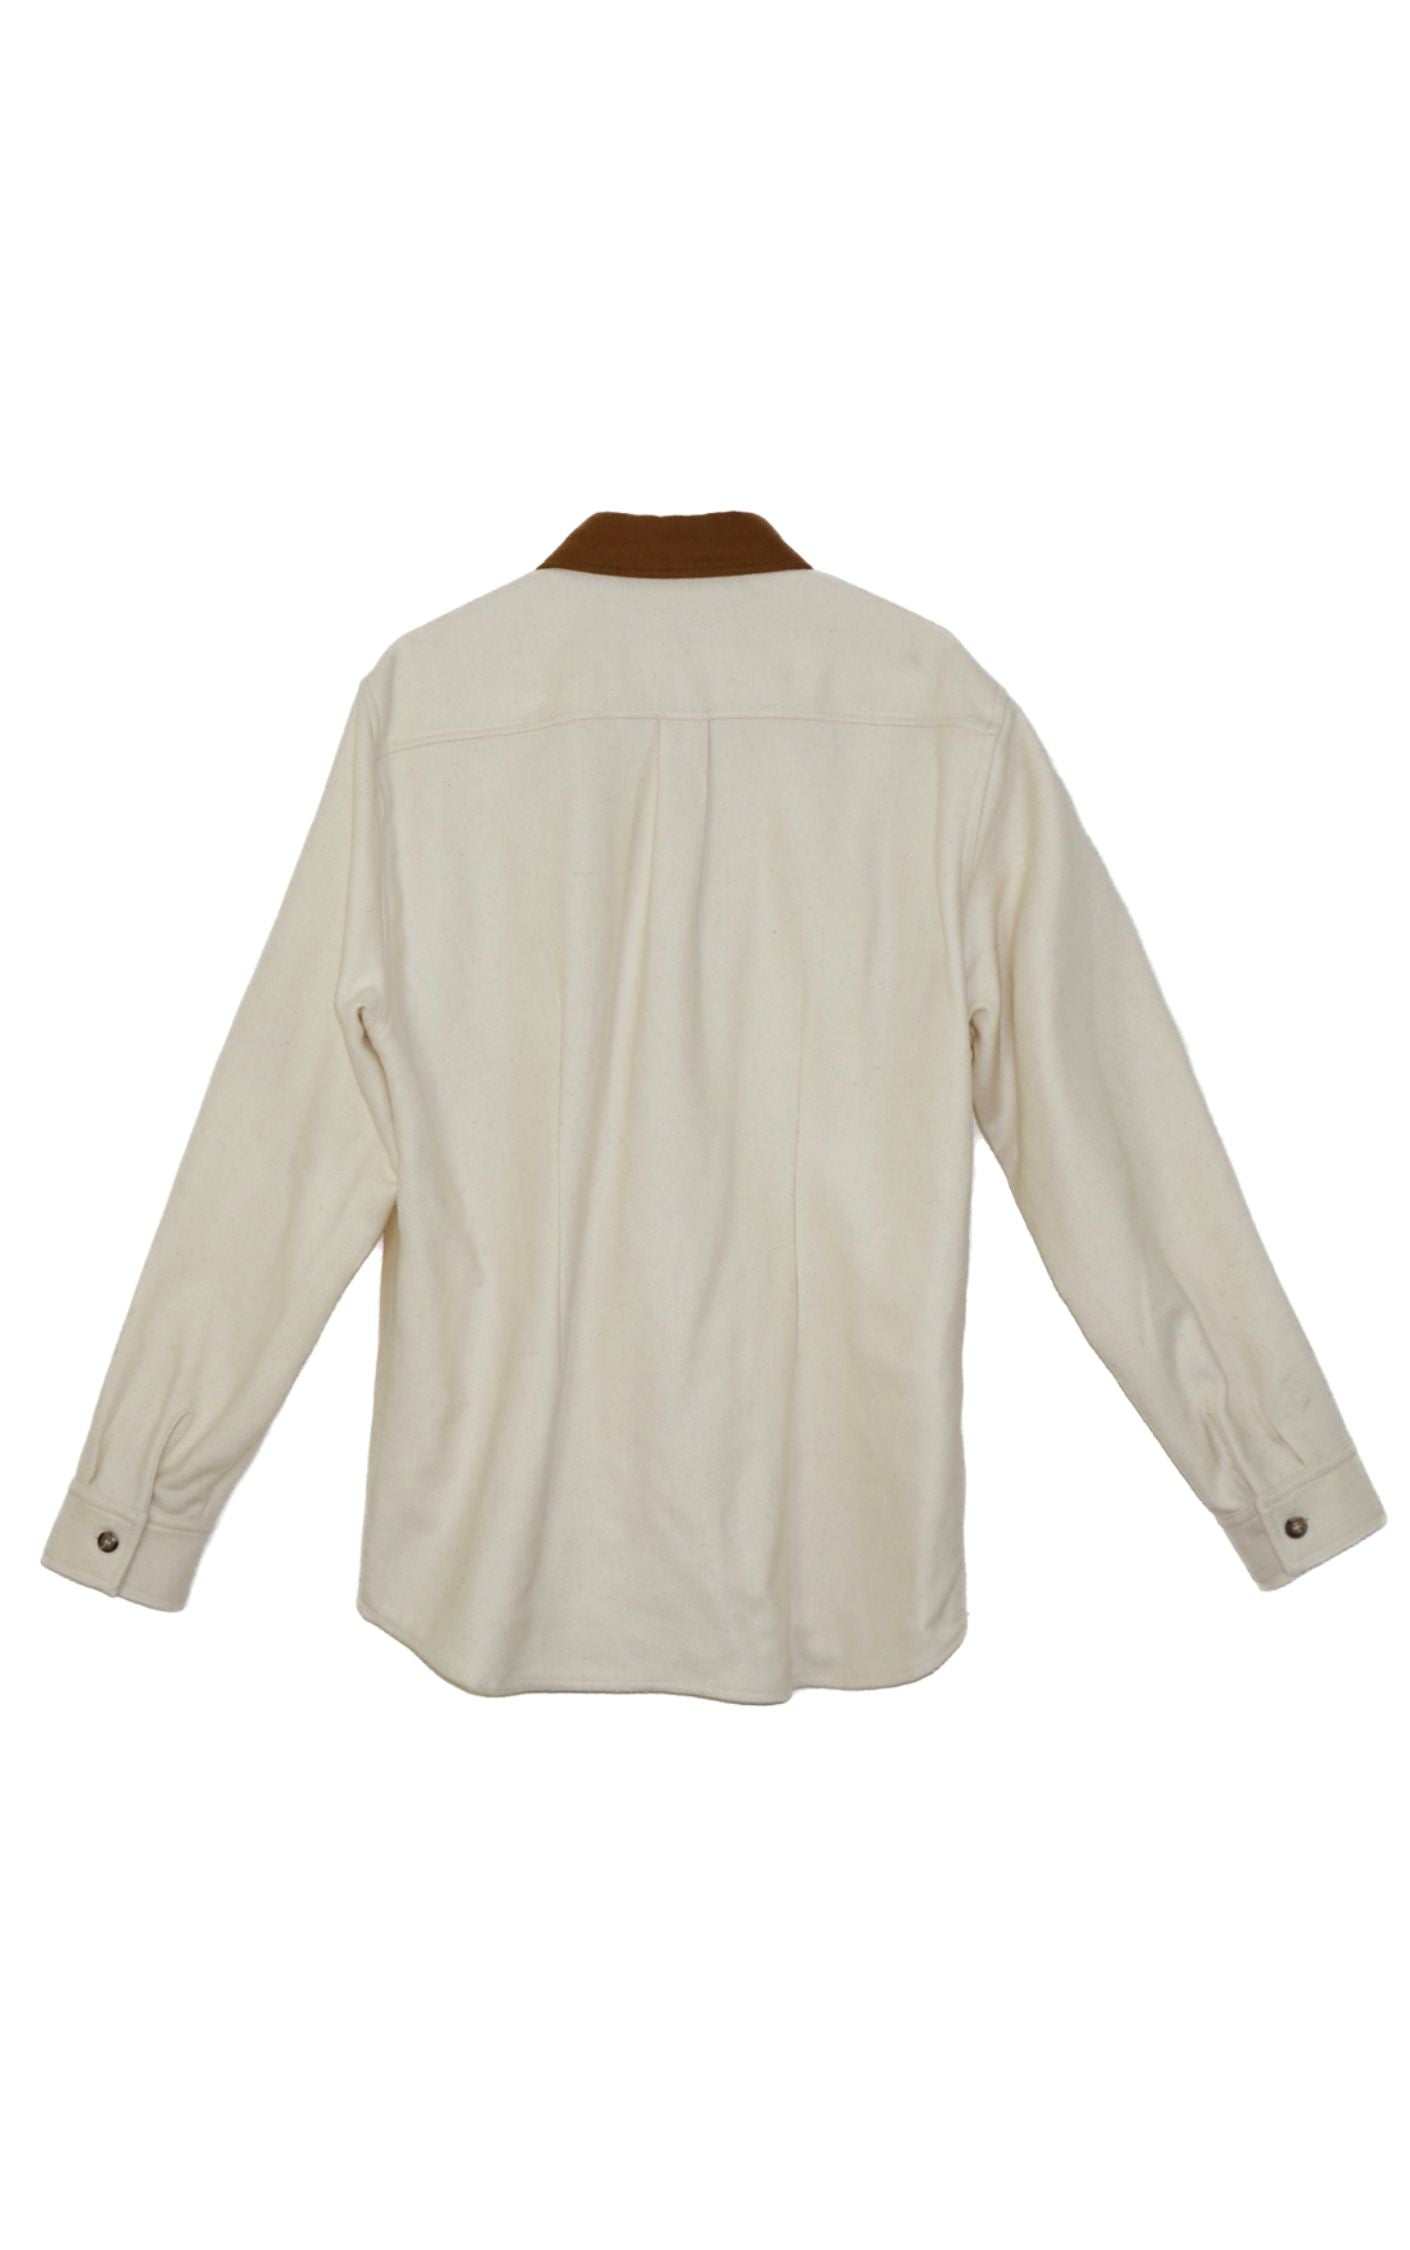 AIME LEON DORE WOOLRICH Wool Buttoned Shirt resellum